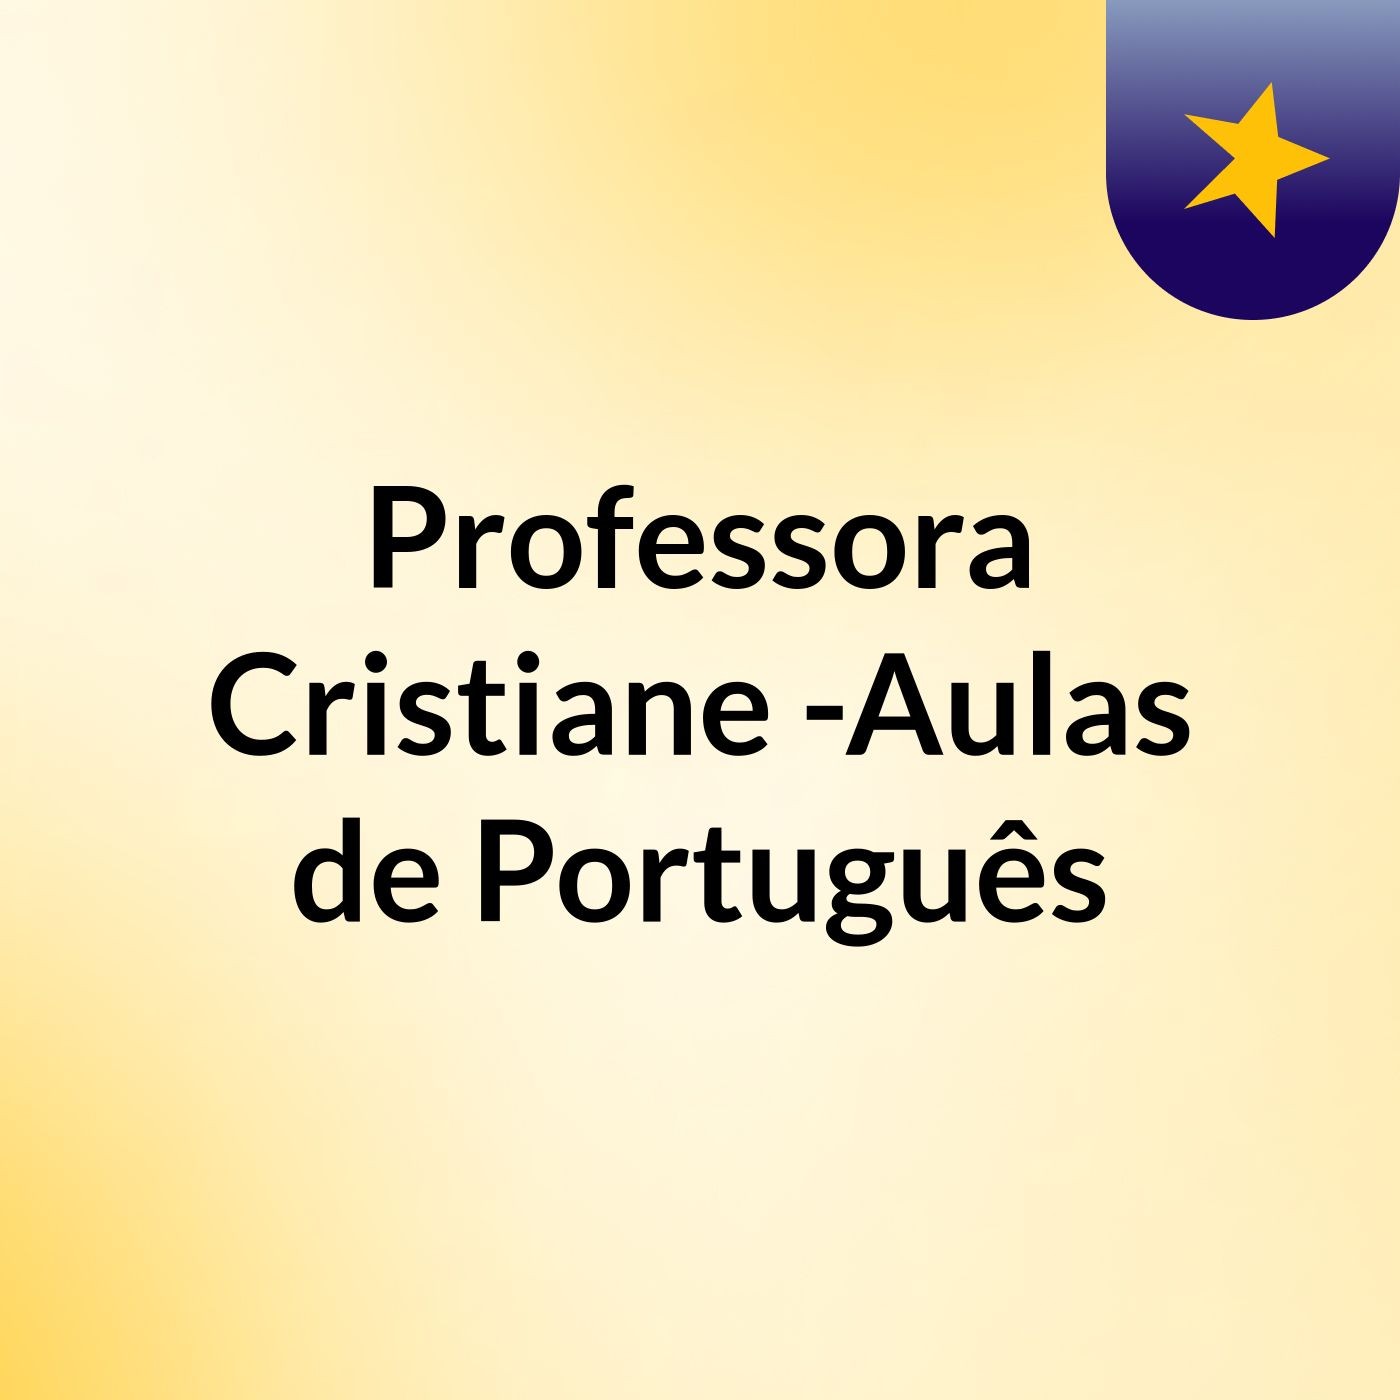 Professora Cristiane -Aulas de Português